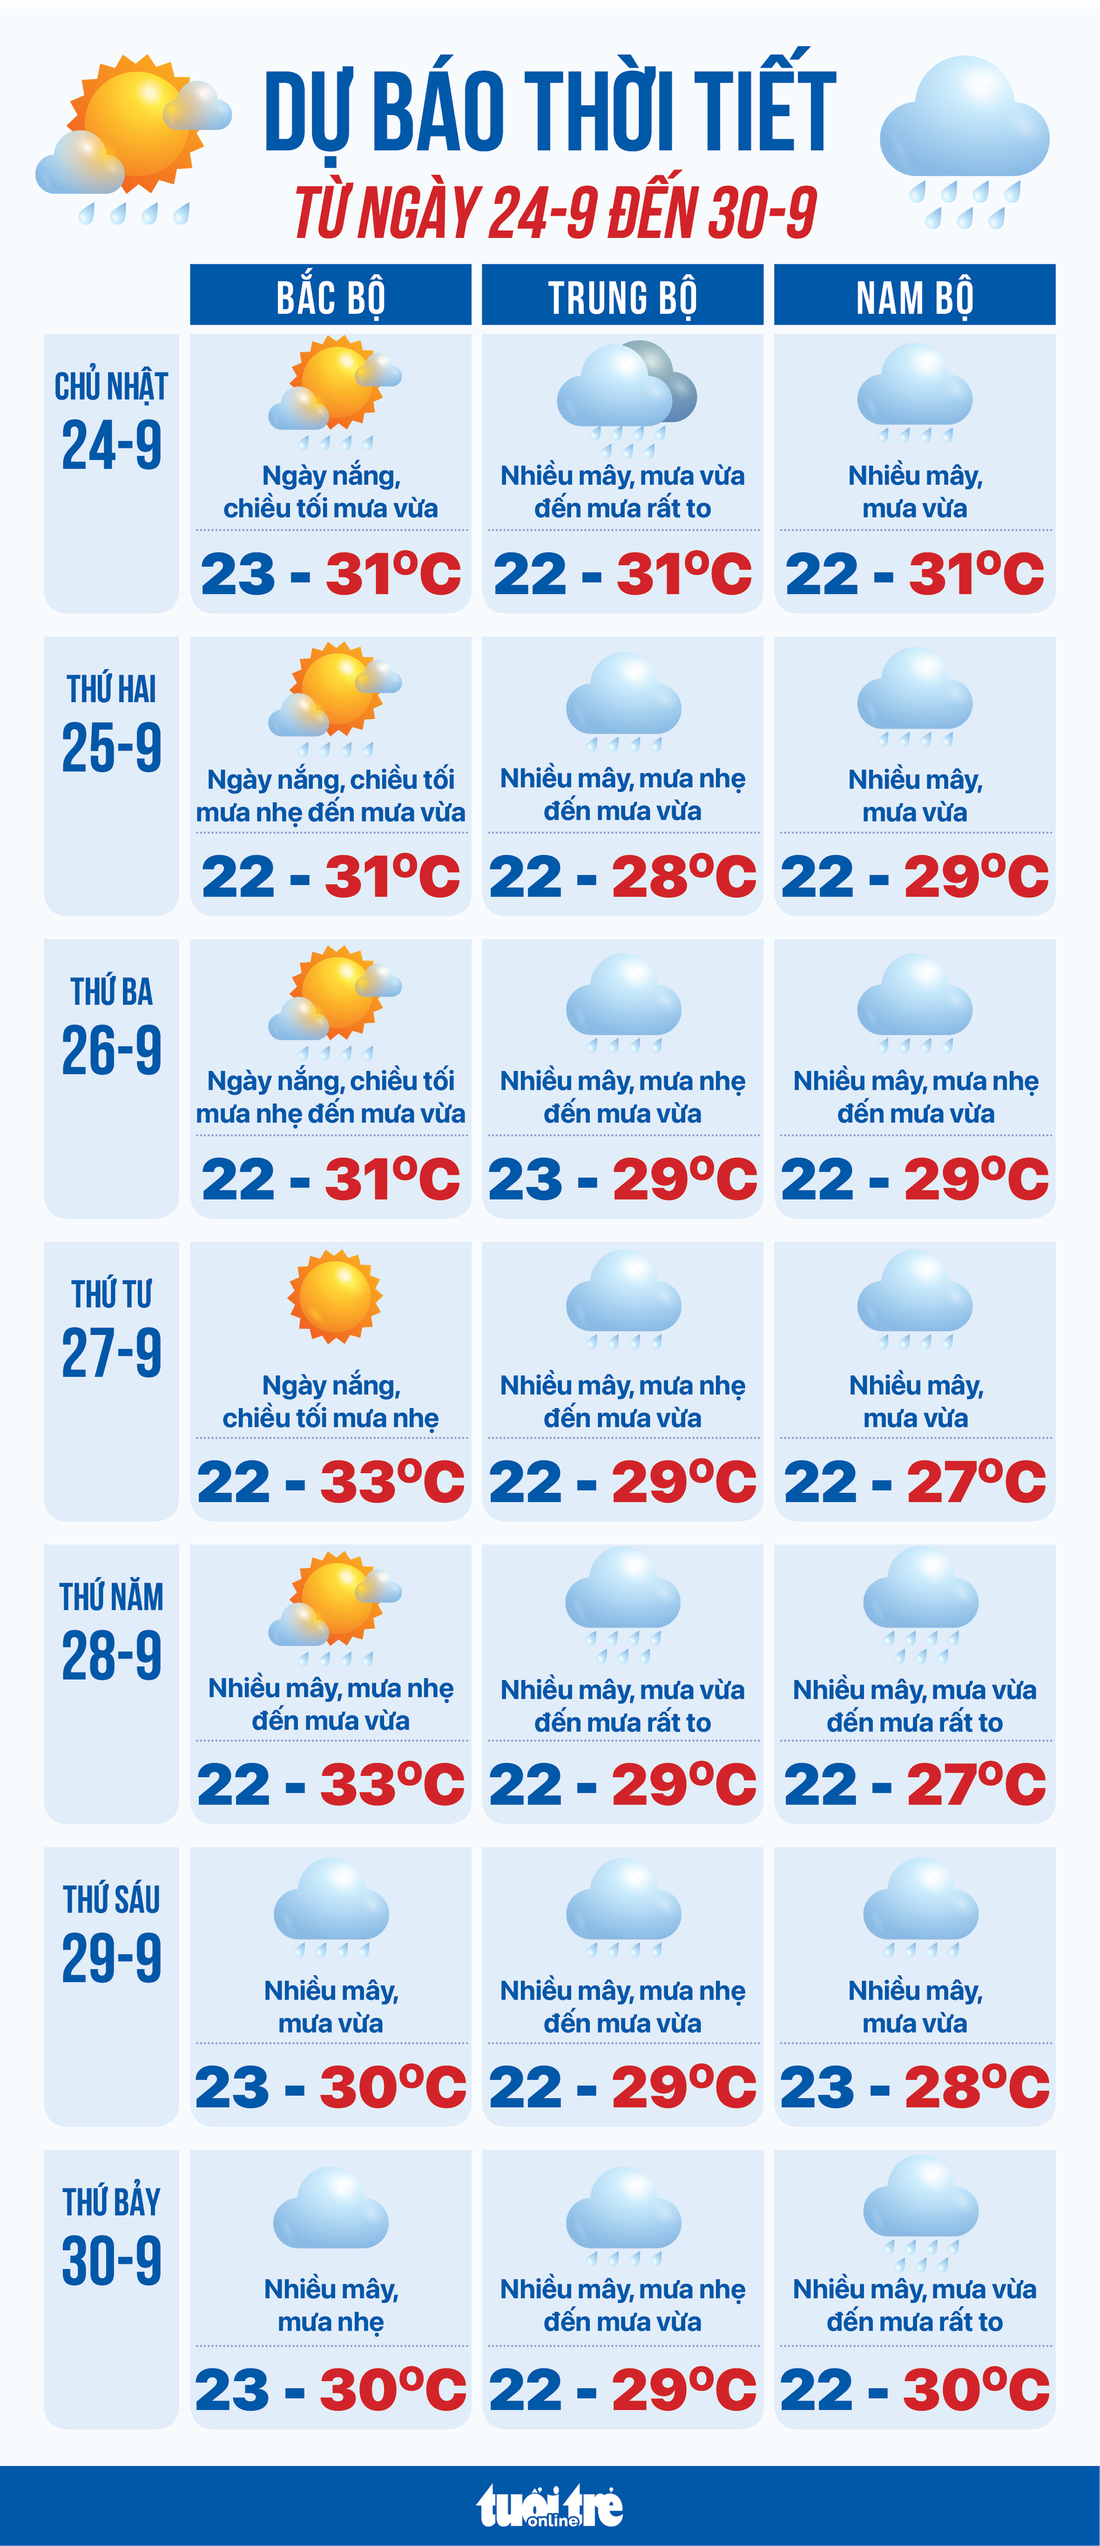 Dự báo thời tiết tuần từ 24 đến 30-9 - Đồ họa: NGỌC THÀNH